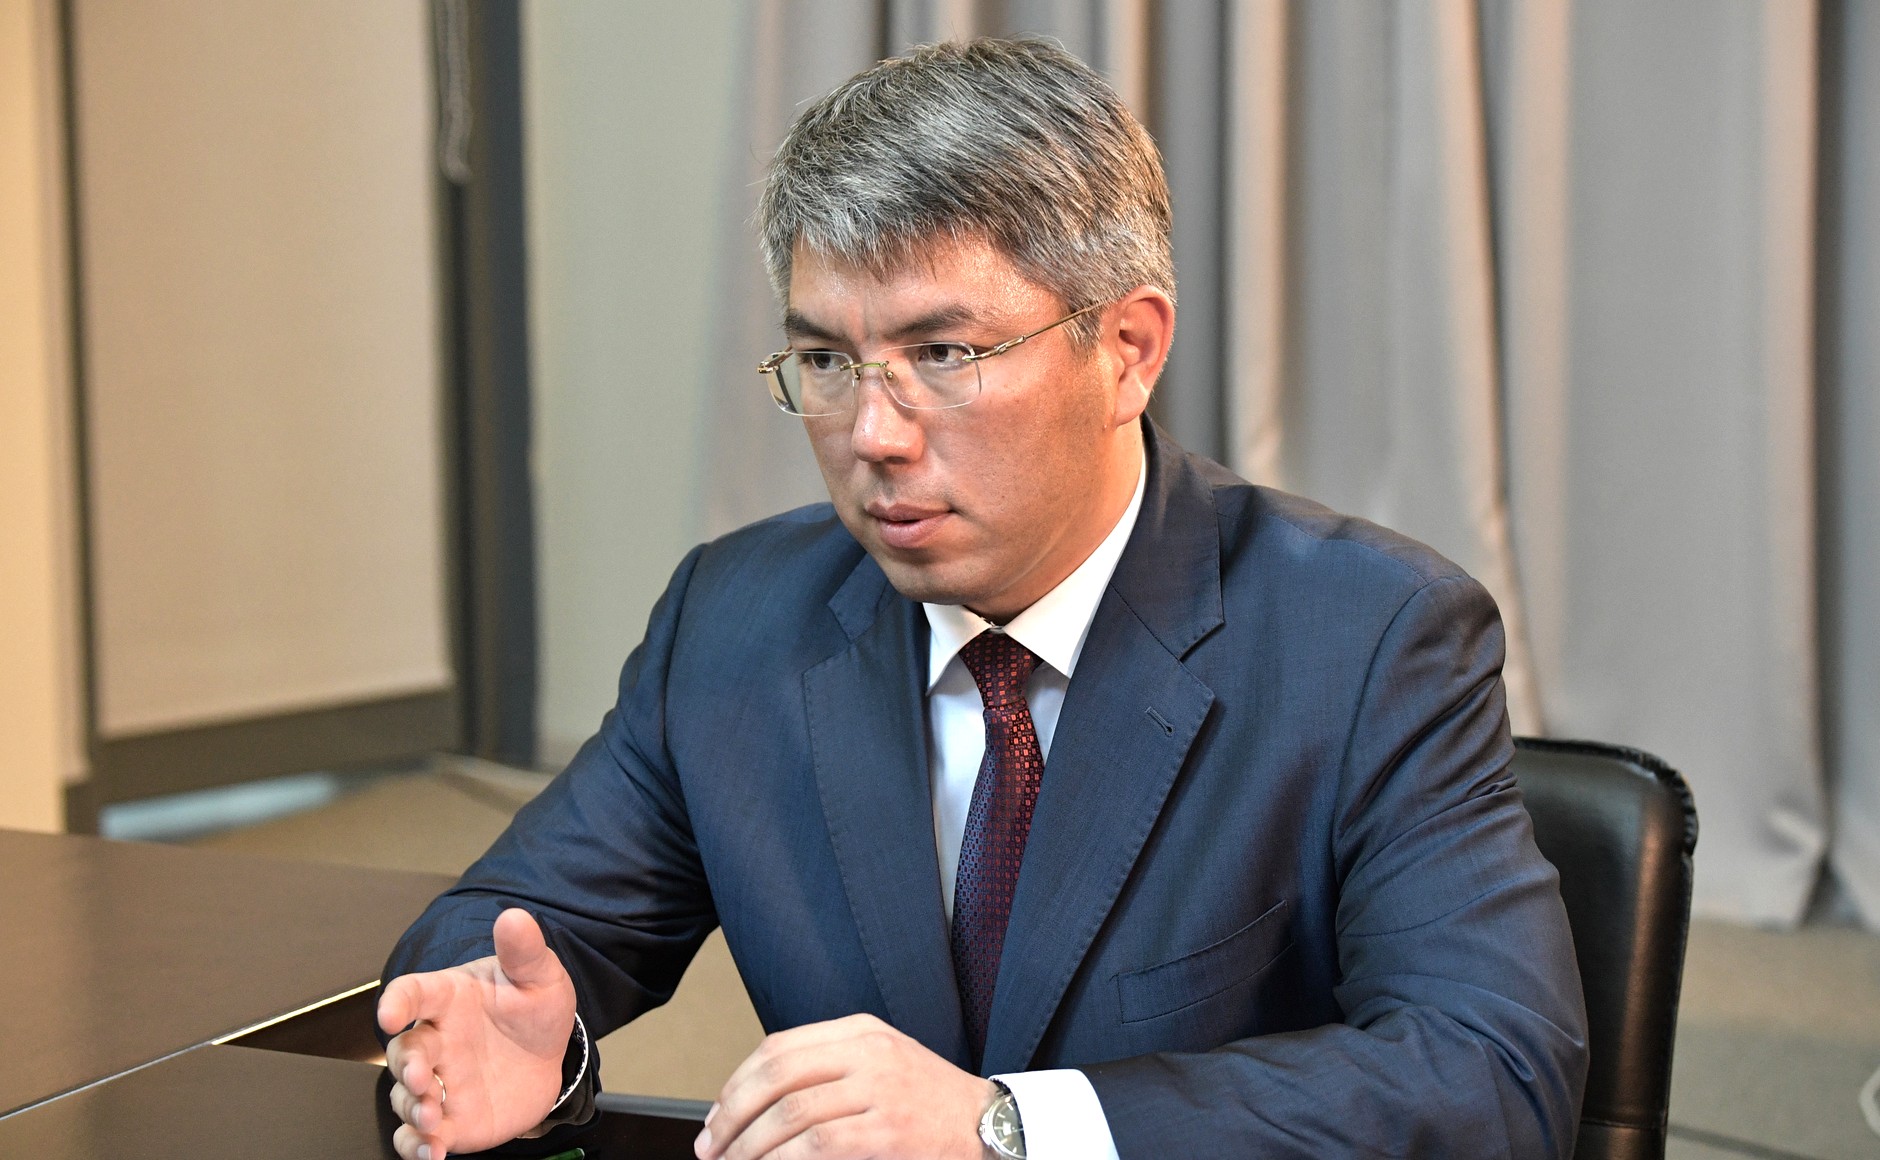 Цыденов победил на выборах главы Бурятии с 86,23% голосов